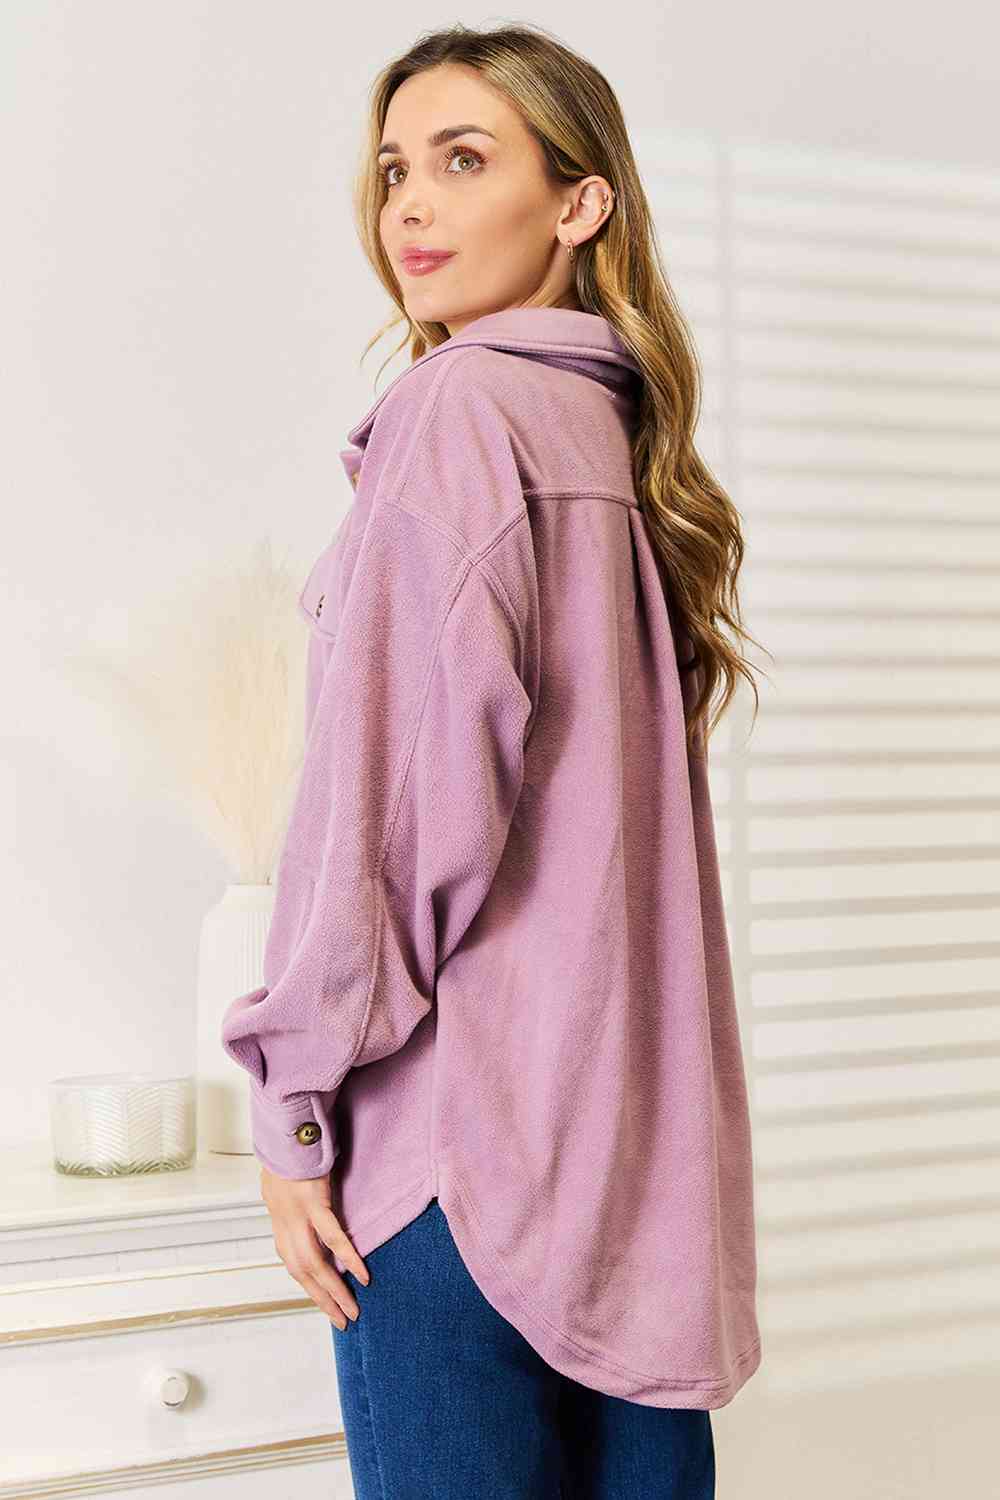 Cozy Girl Shacket in Lavender